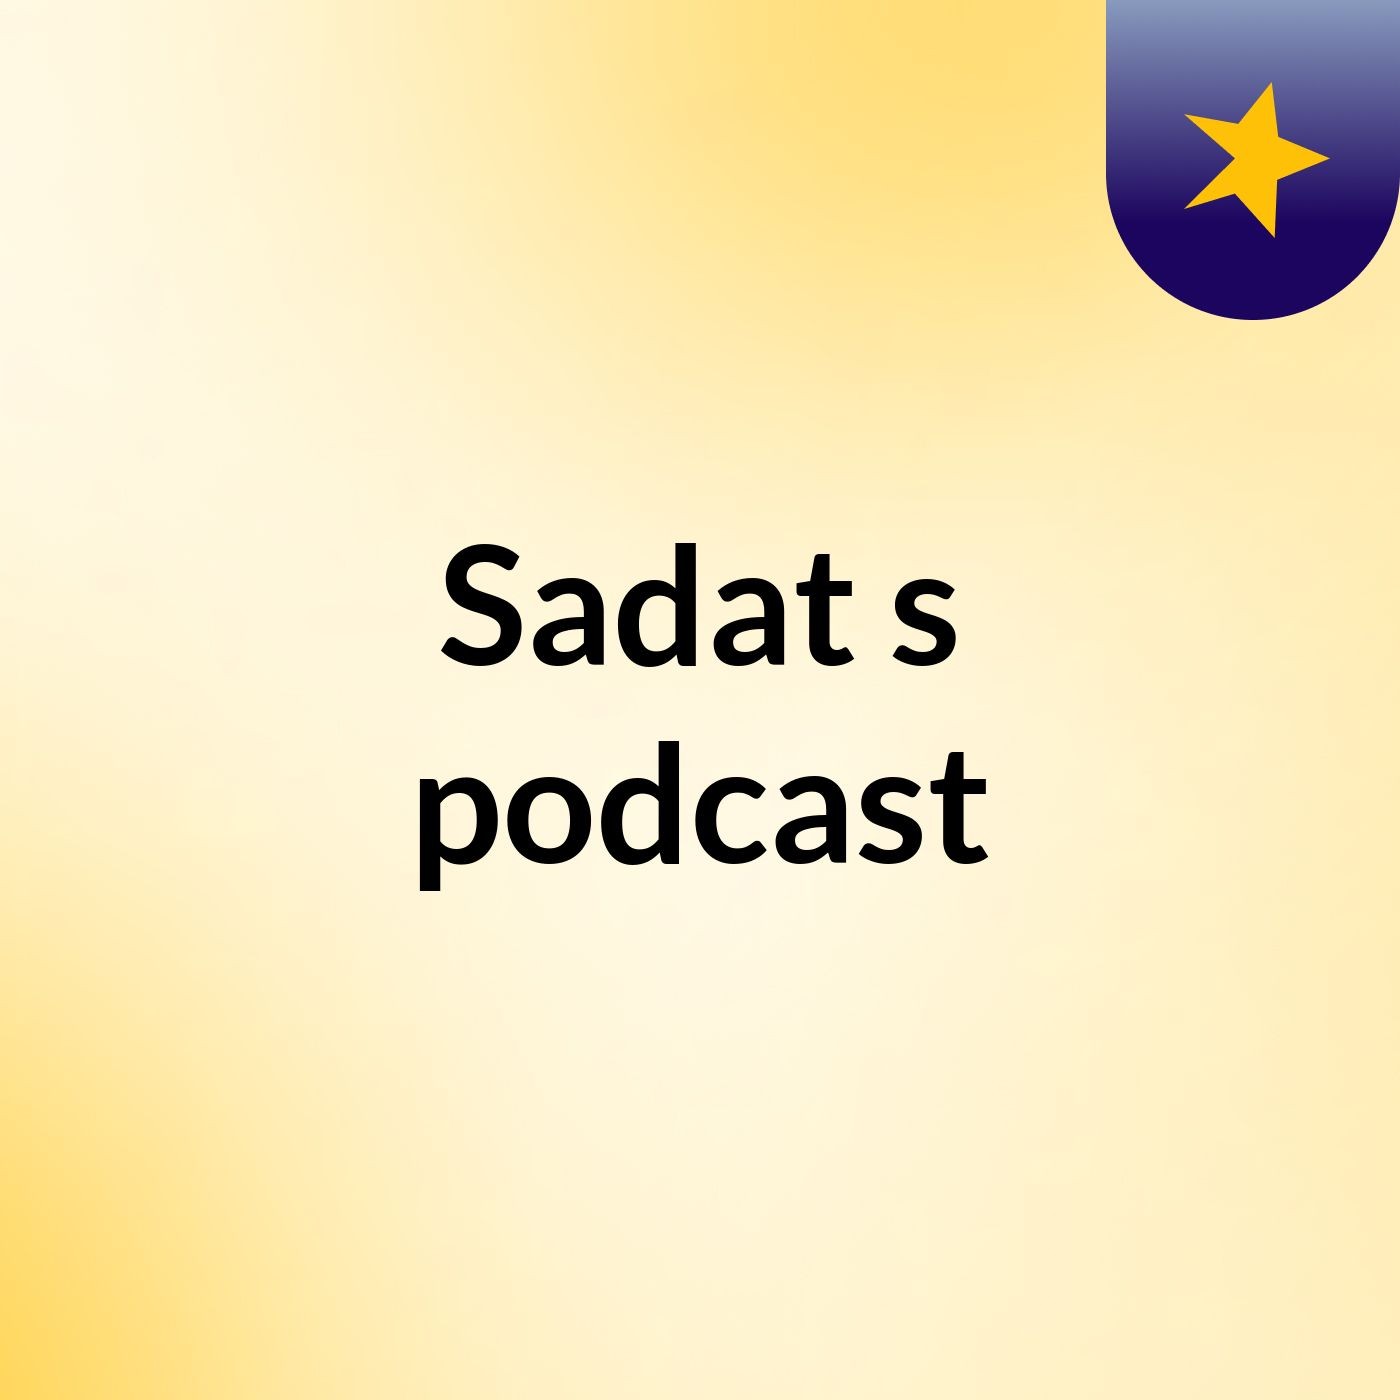 Sadat's podcast